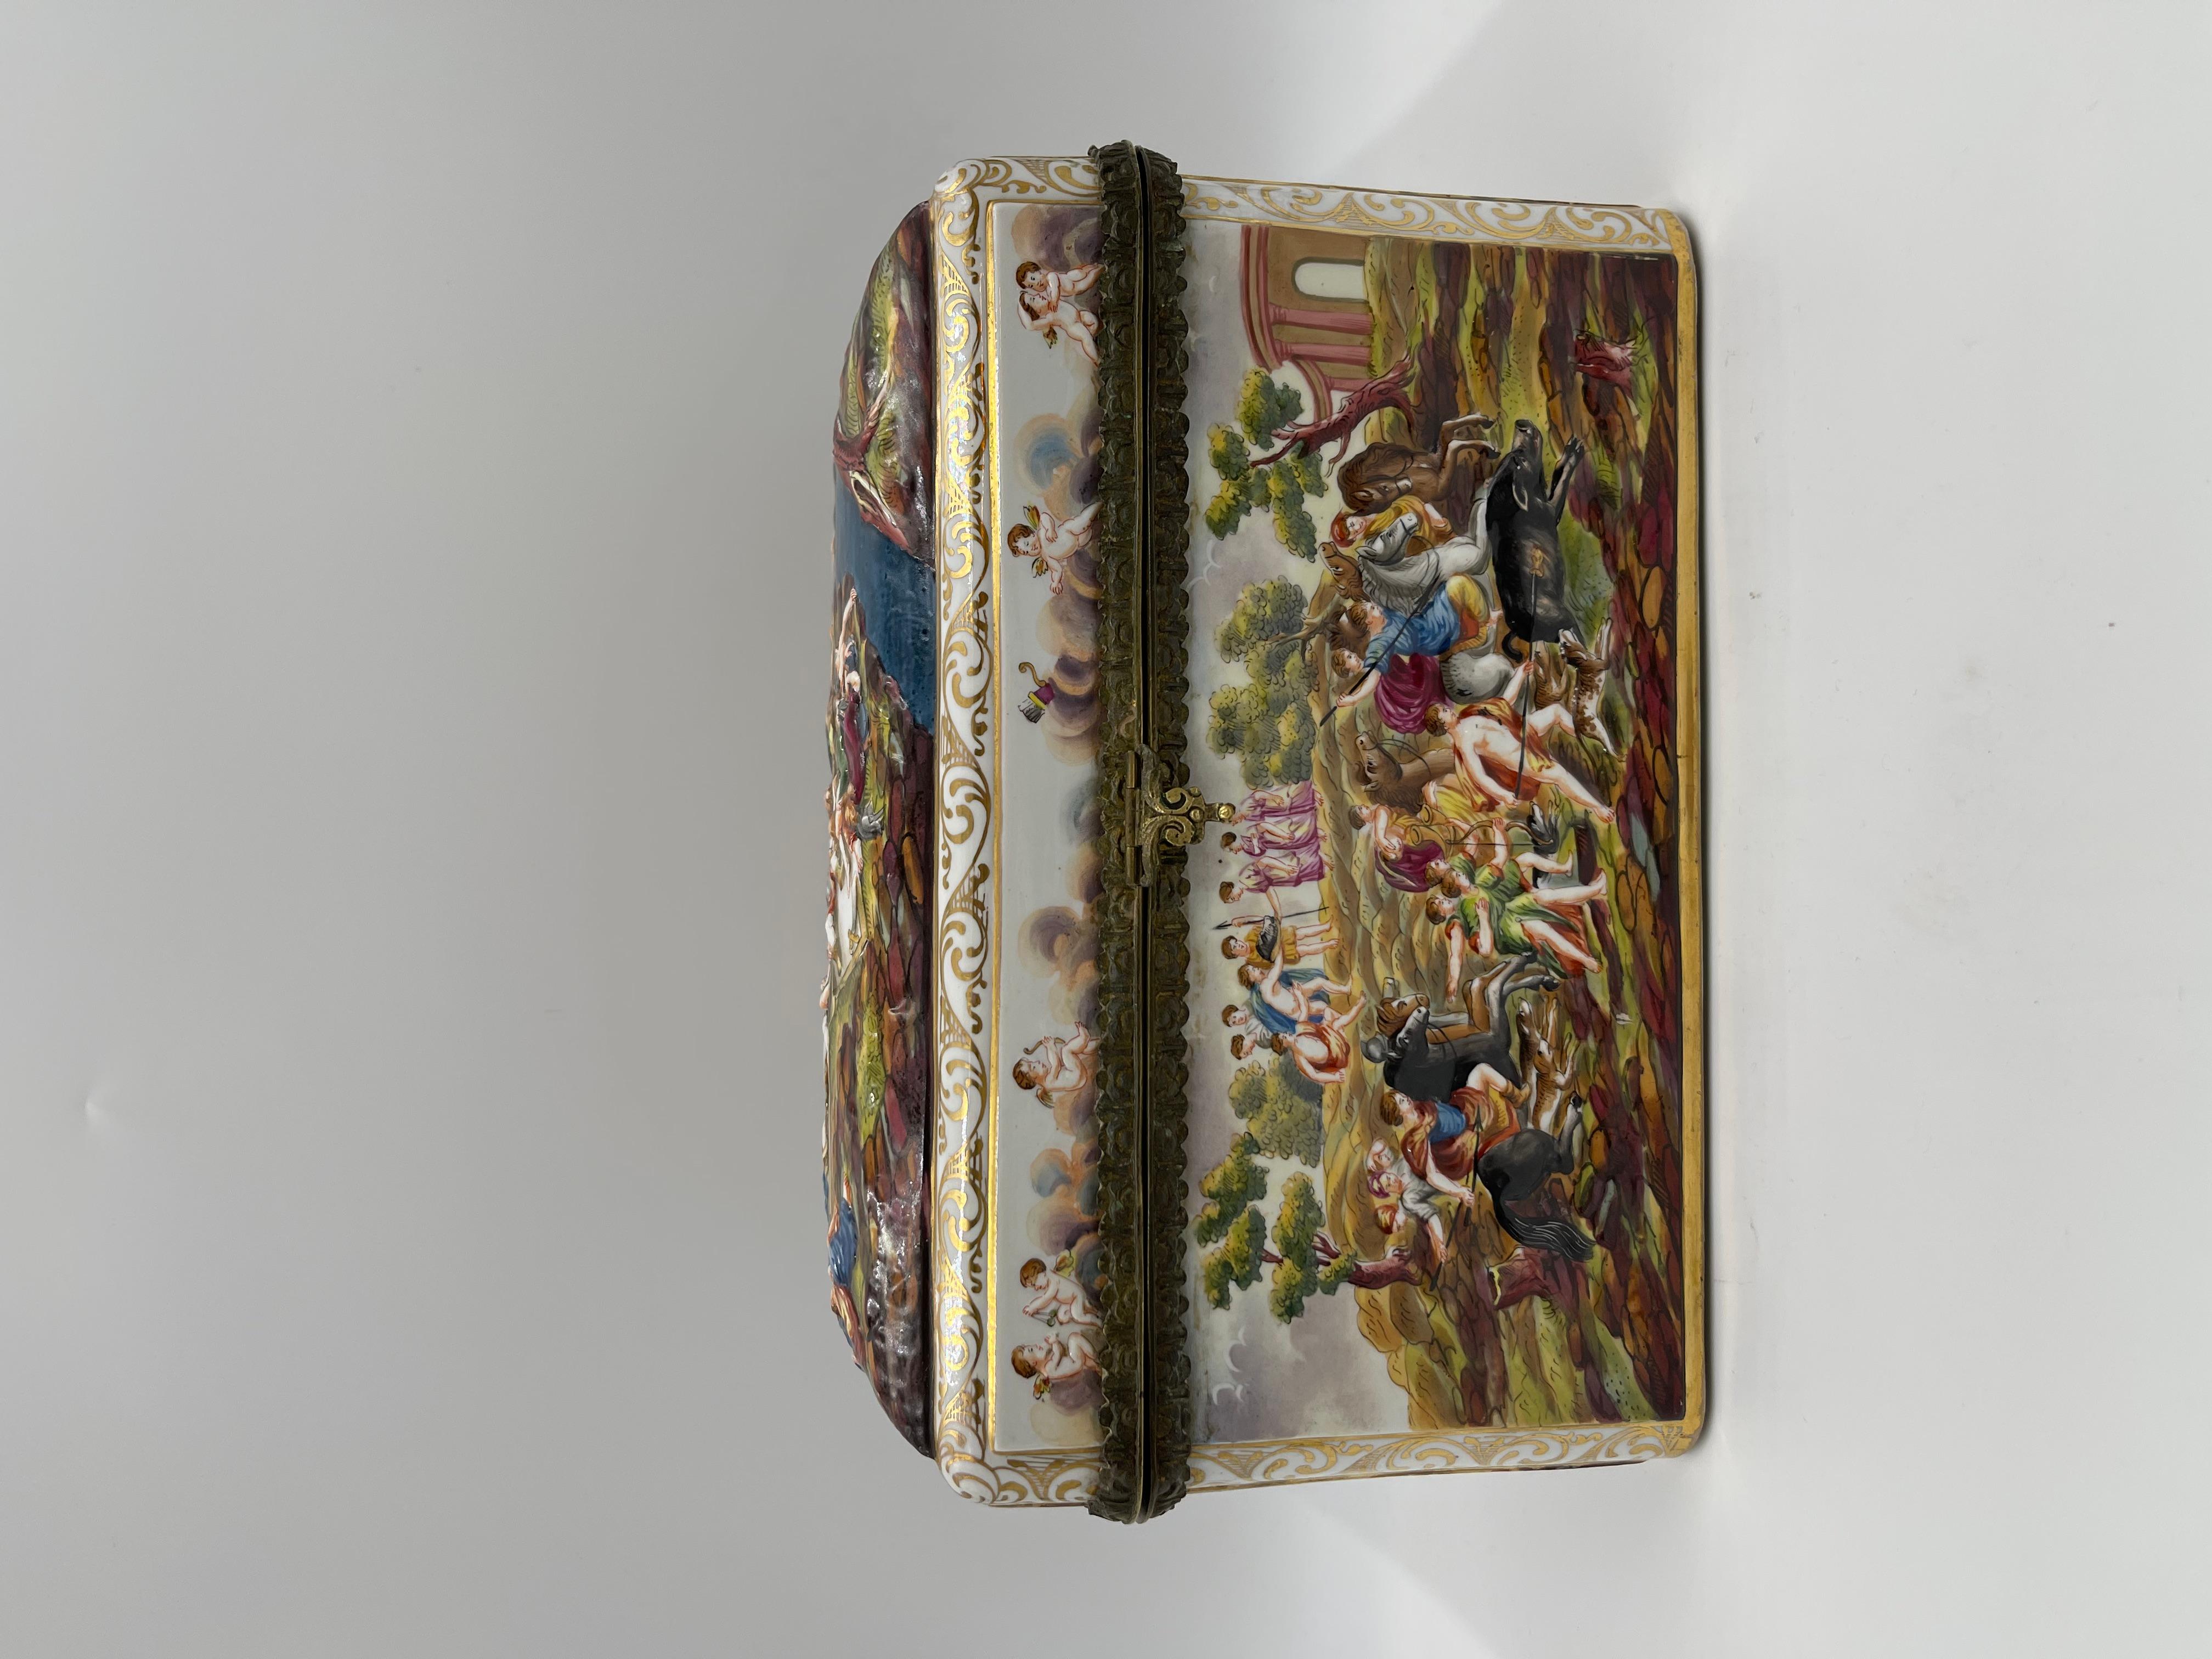 Rare Large 19th C. Capodimonte Porcelain Box / Table Casket For Sale 1